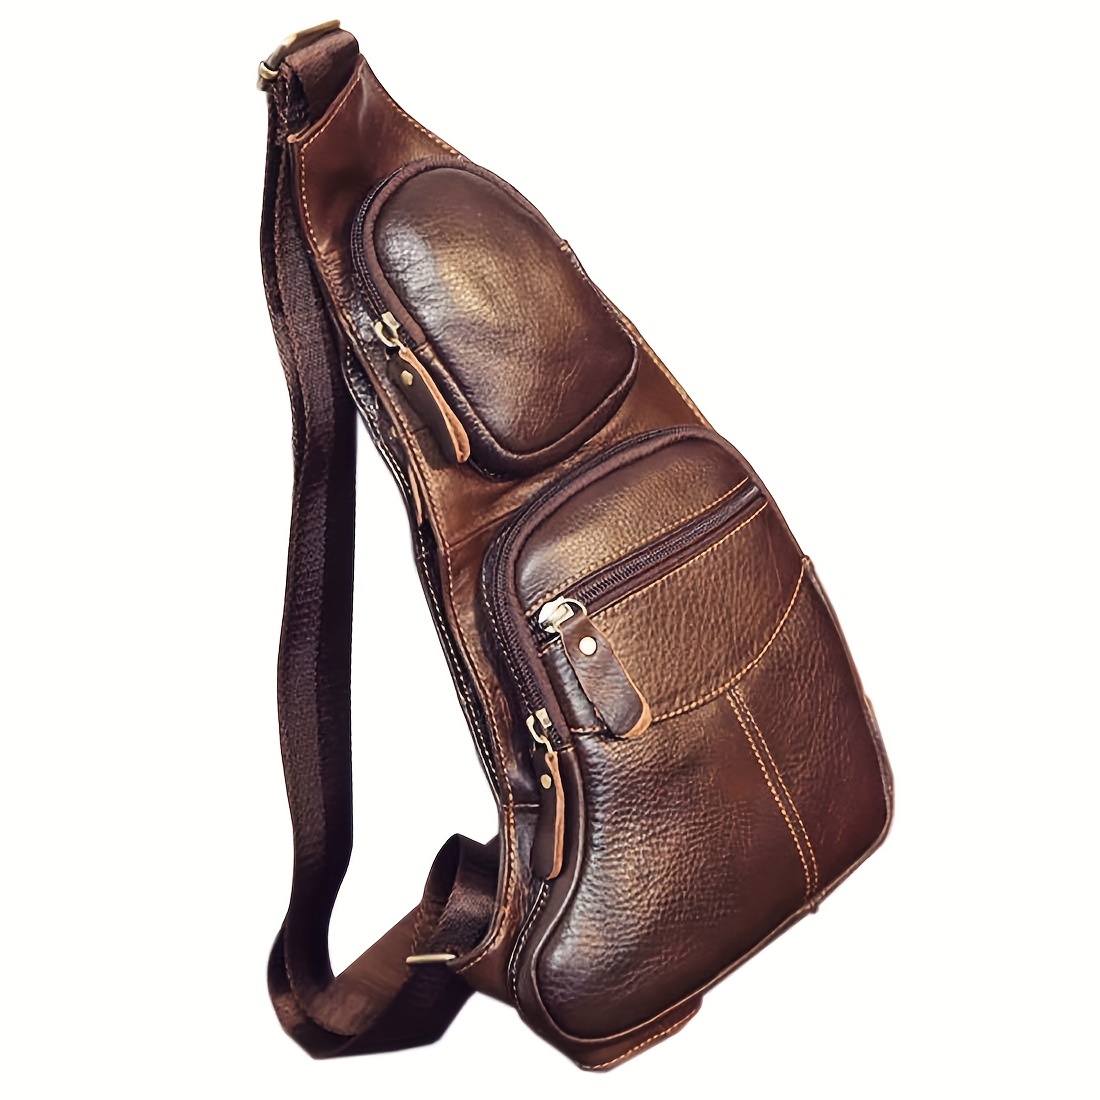 Vintage Leather Chest Bag, Zipper Stylish Crossbody Bag, Multifunctional Adjustable Strap Sling Bag